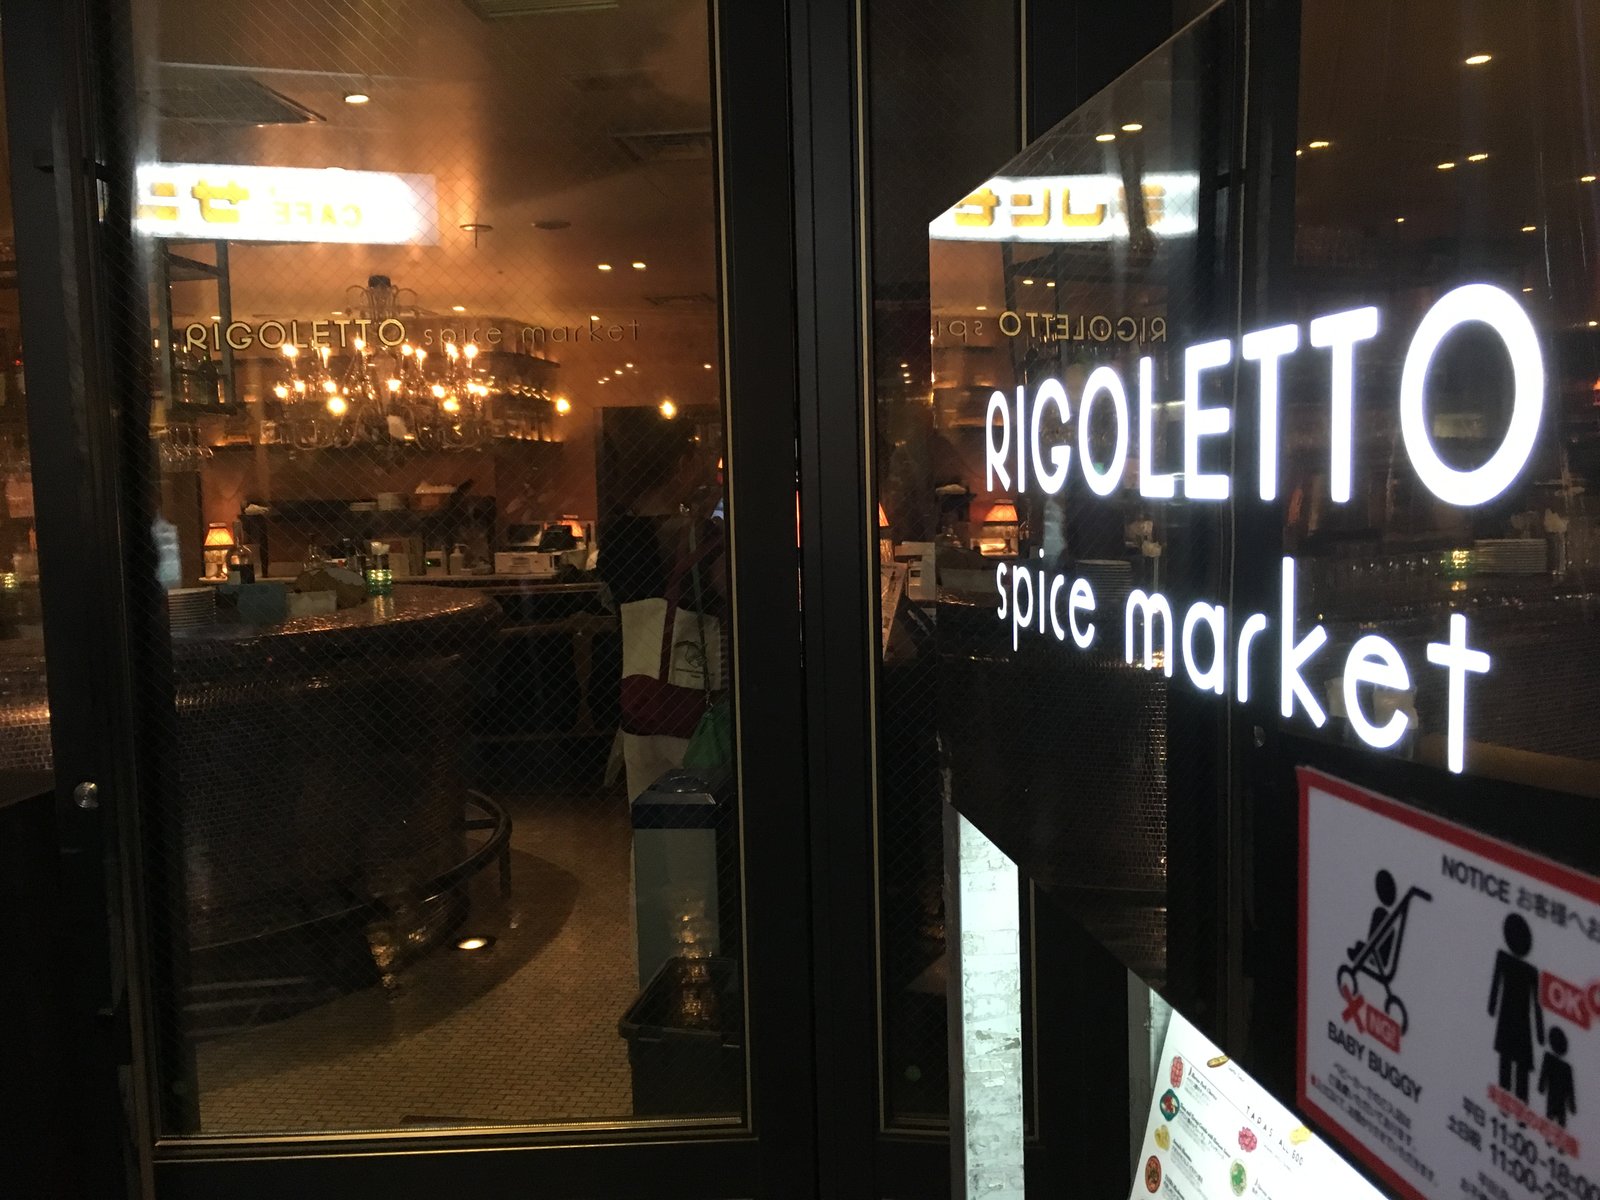 RIGOLETTO spice market